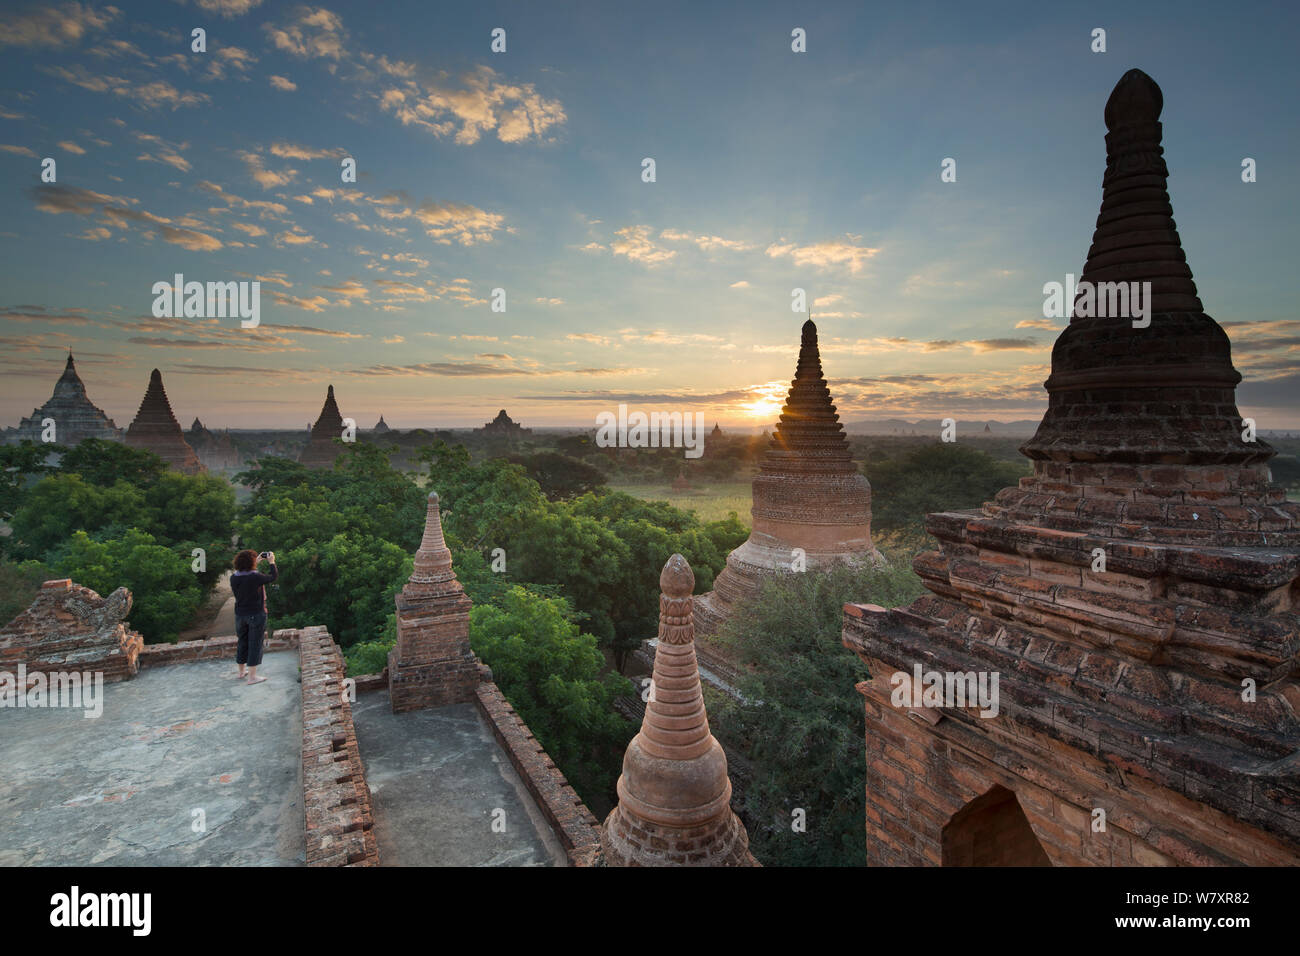 Frau ein Bild von die Tempel von Bagan bei Sonnenaufgang, Myanmar, November 2012. Stockfoto